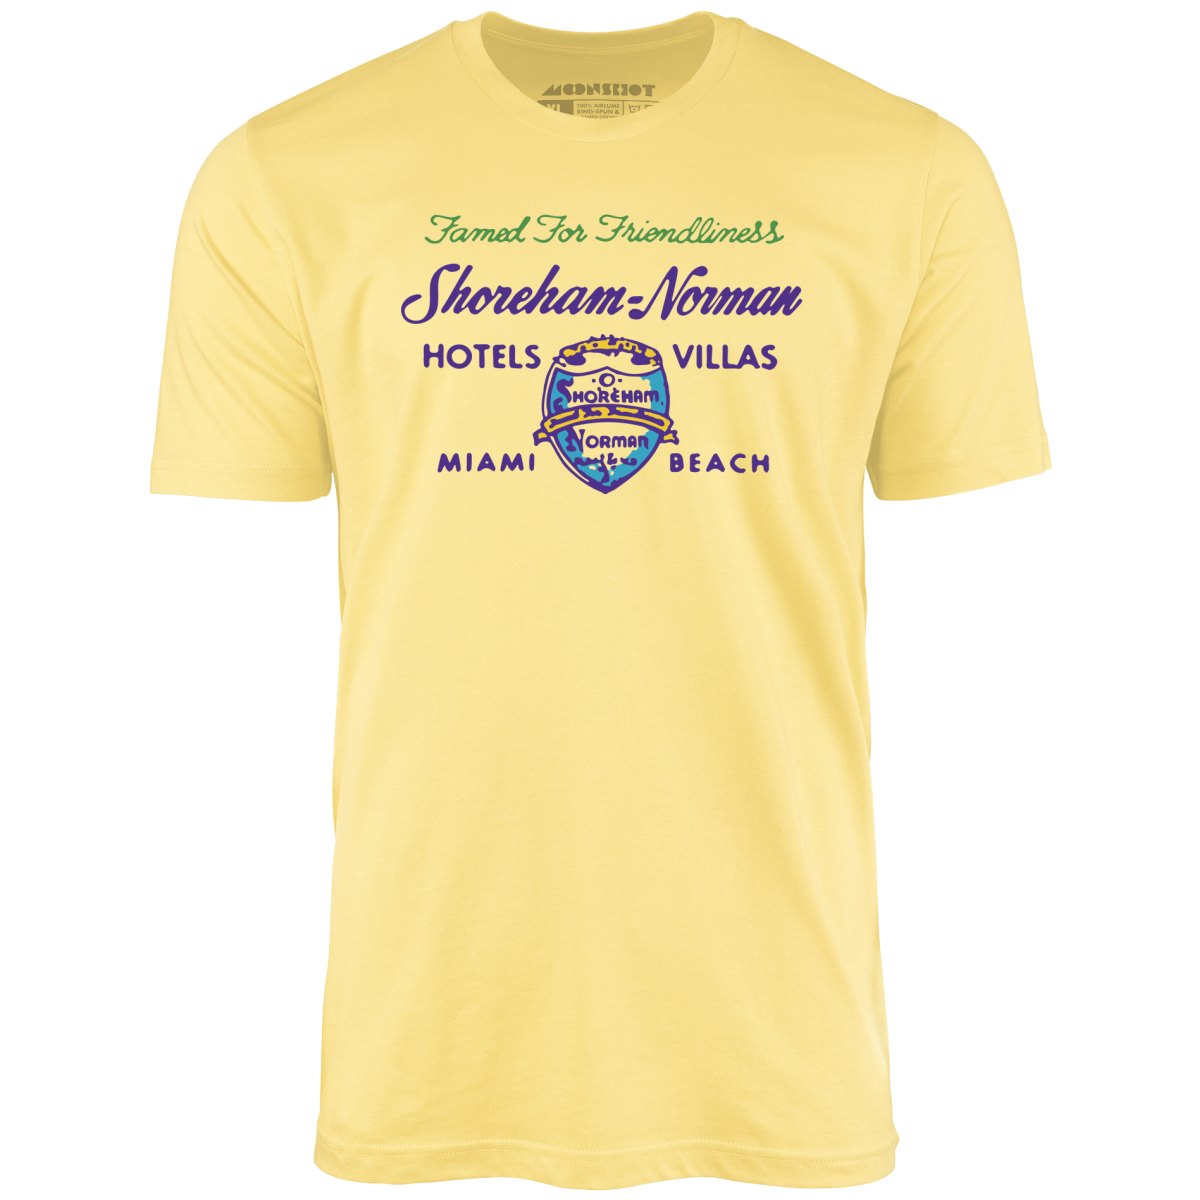 Shoreham Norman Hotels & Villas v2 - Miami, FL - Vintage Hotel - Unisex T-Shirt